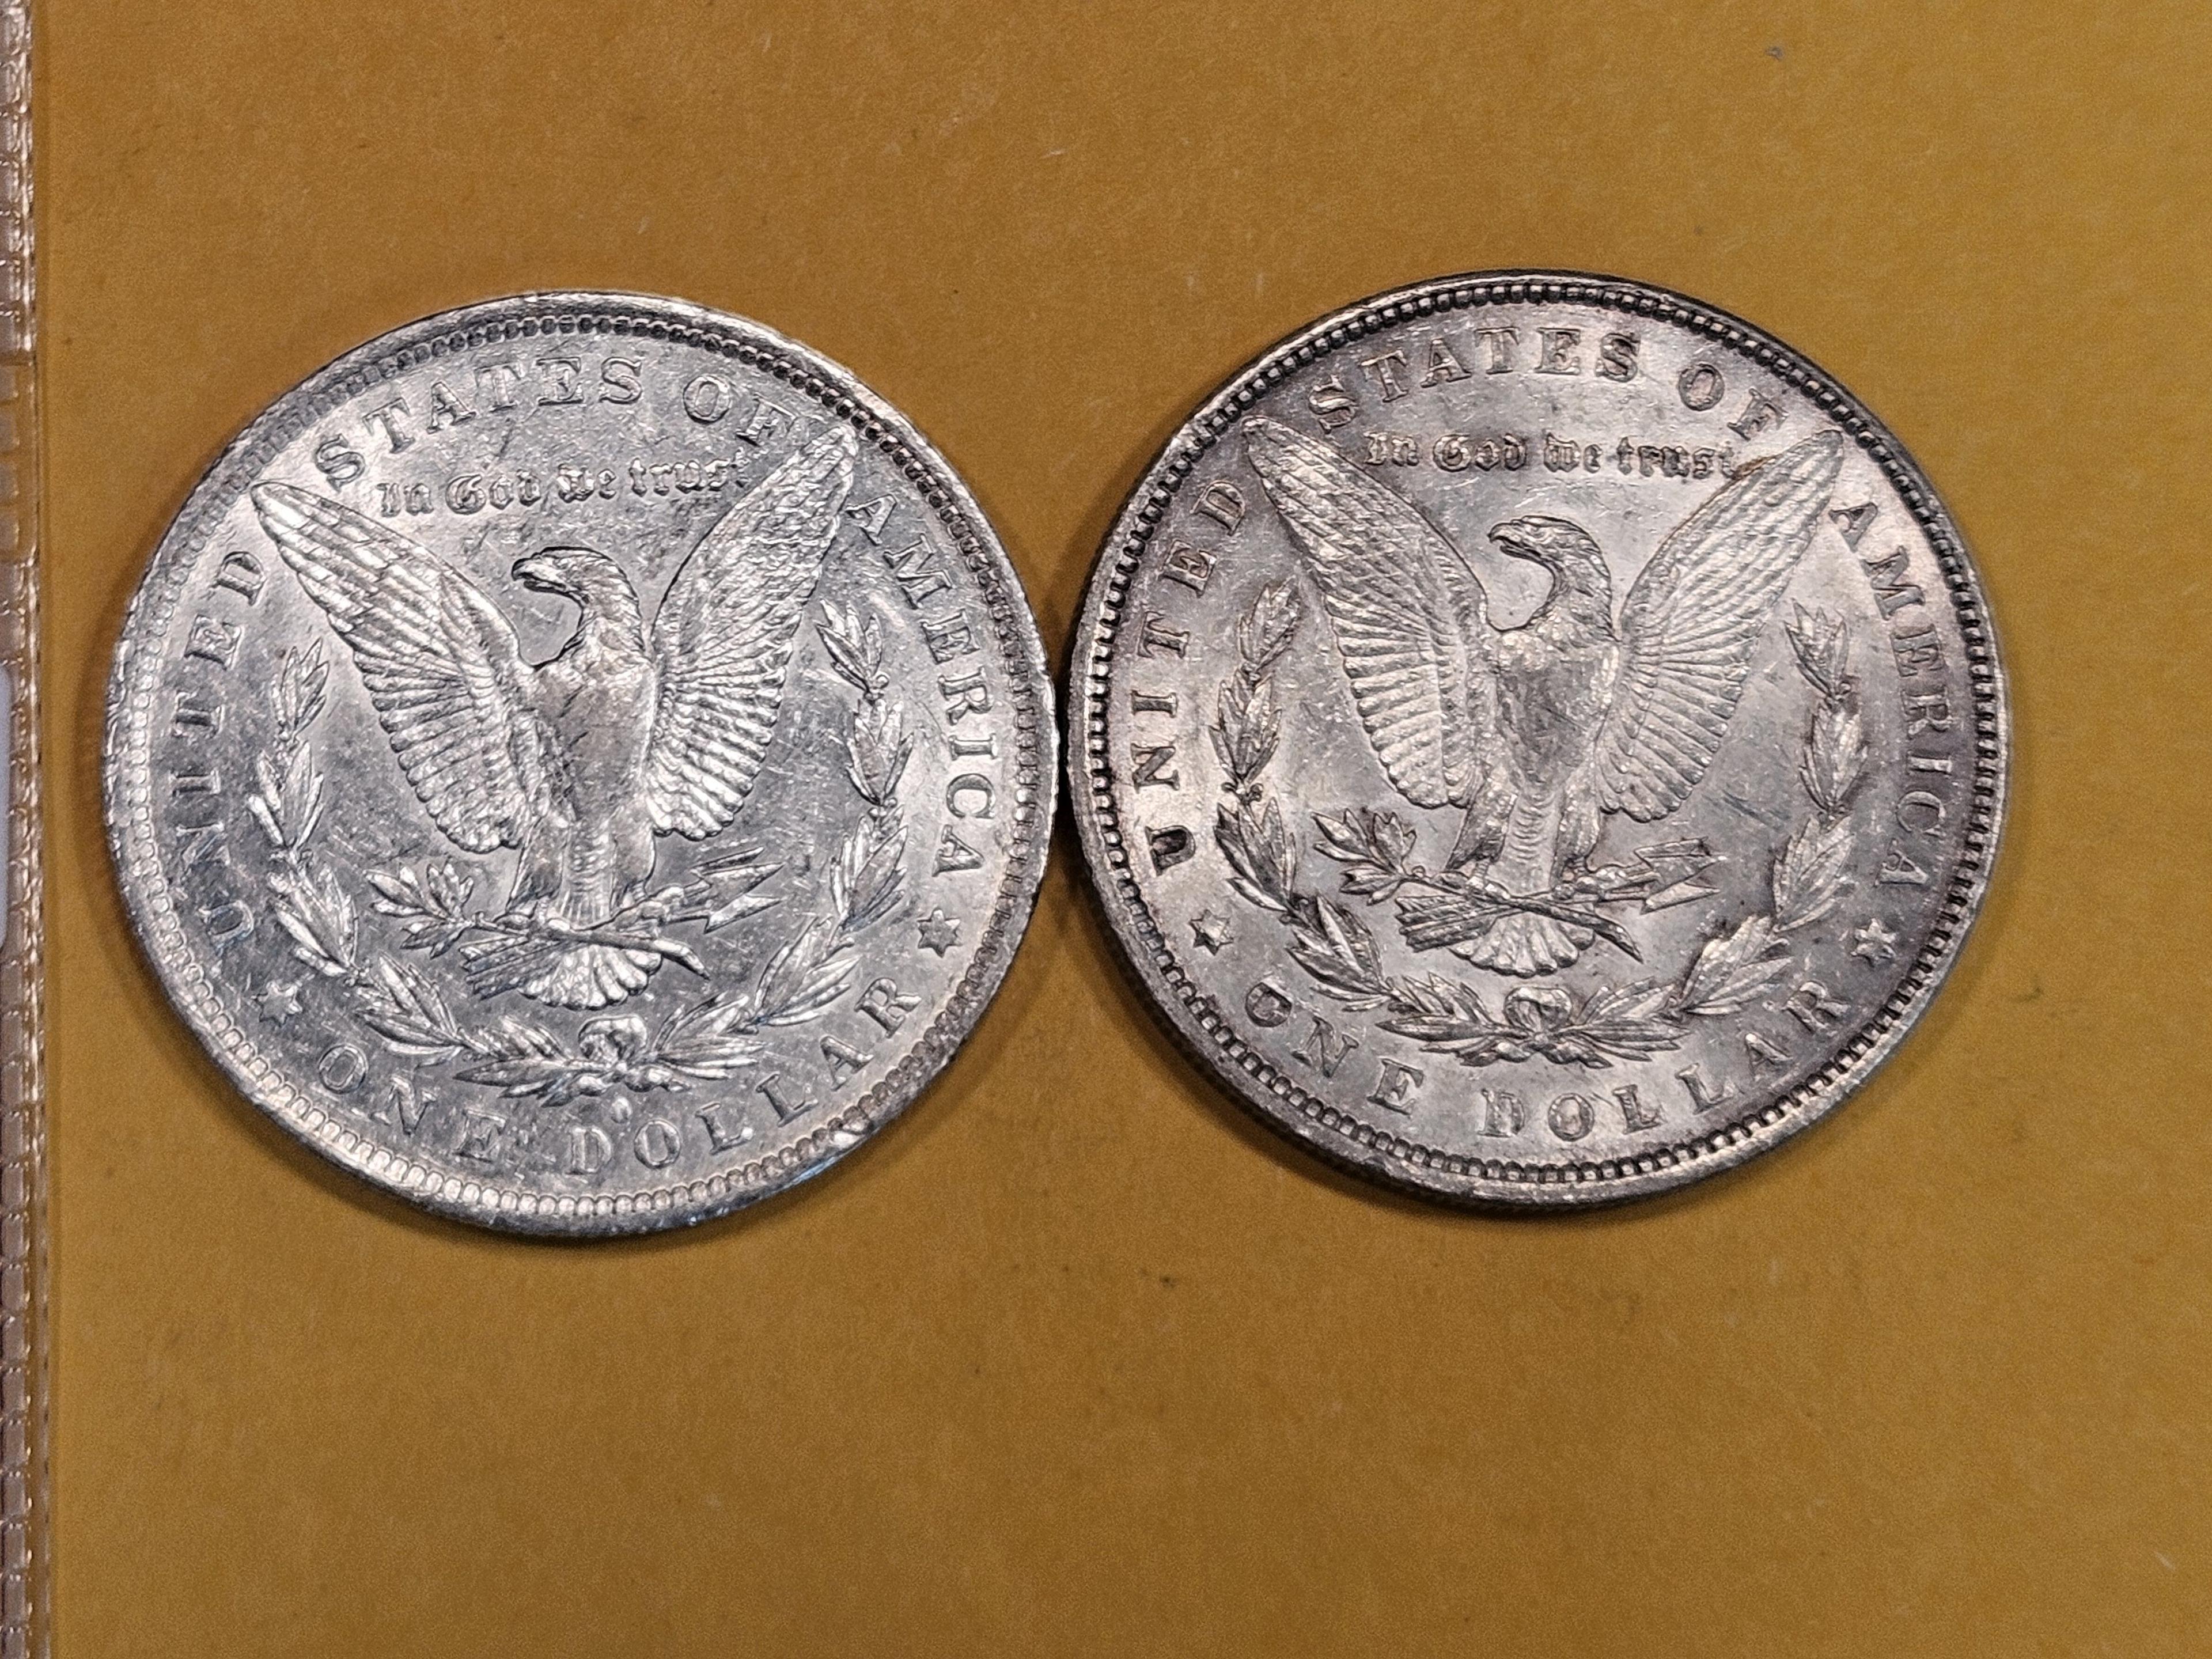 1883-O and 1896 Morgan Dollars